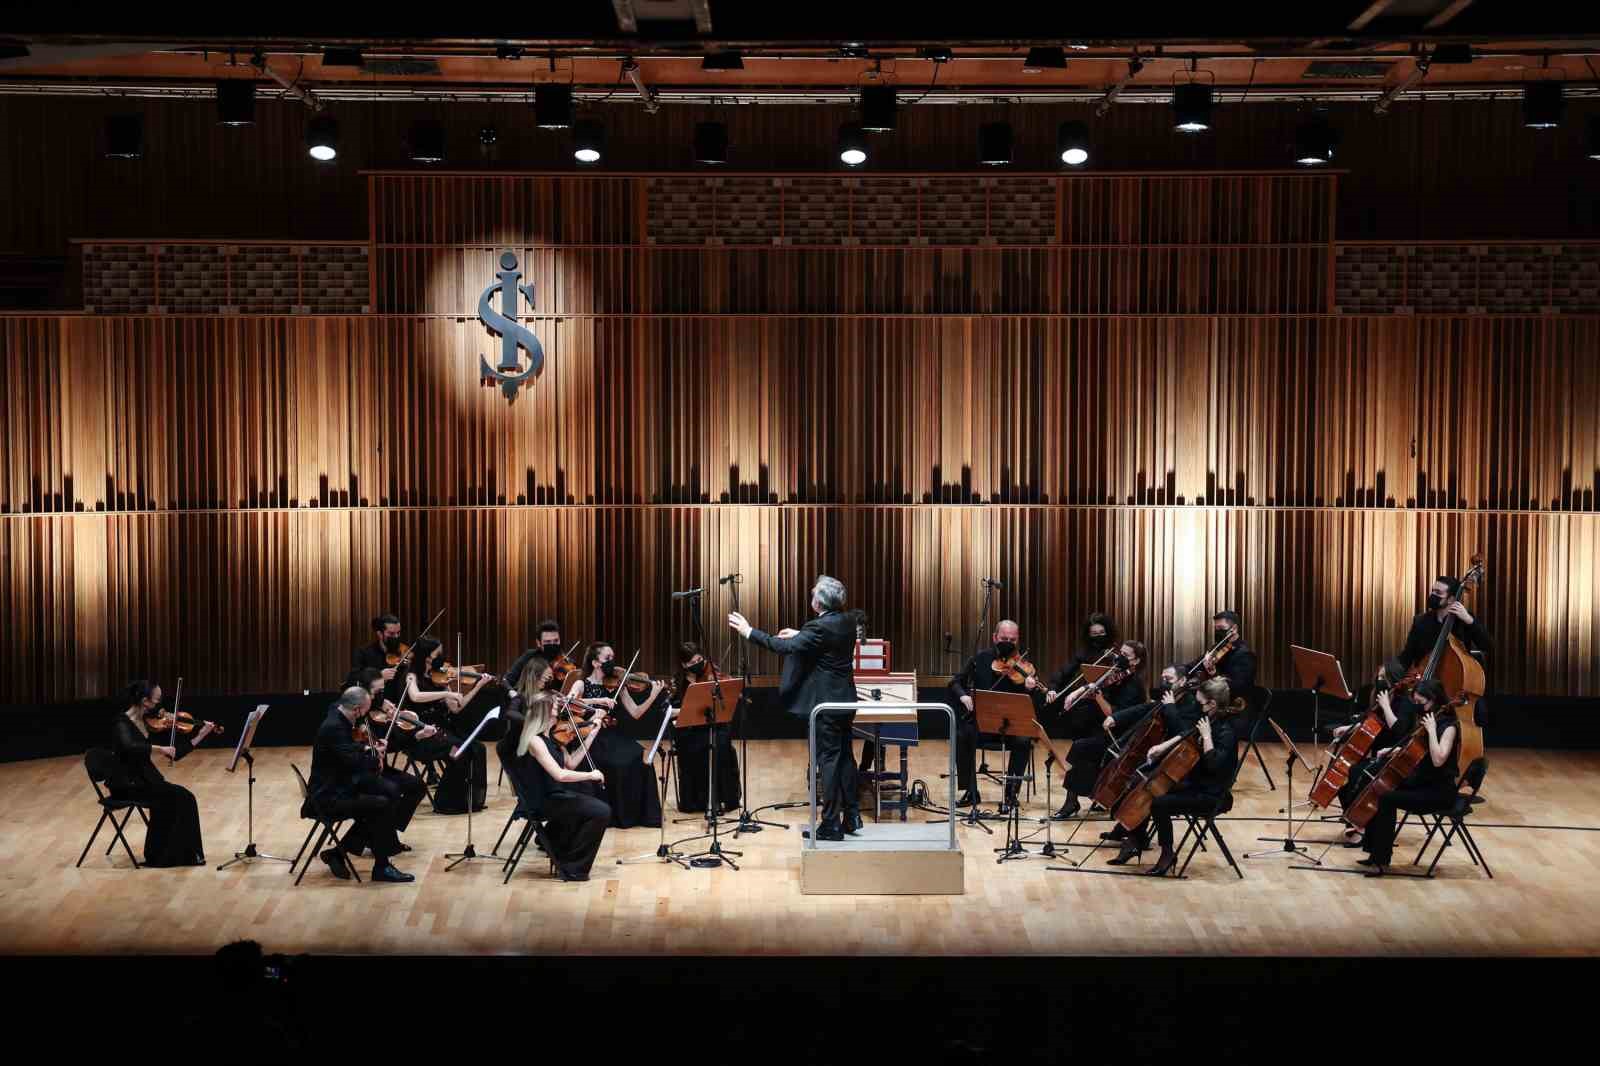 Millî Reasürans Oda Orkestrası, ‘100.Yılda Türk Tangosu’ başlıklı konserle müzikseverleri ağırlayacak